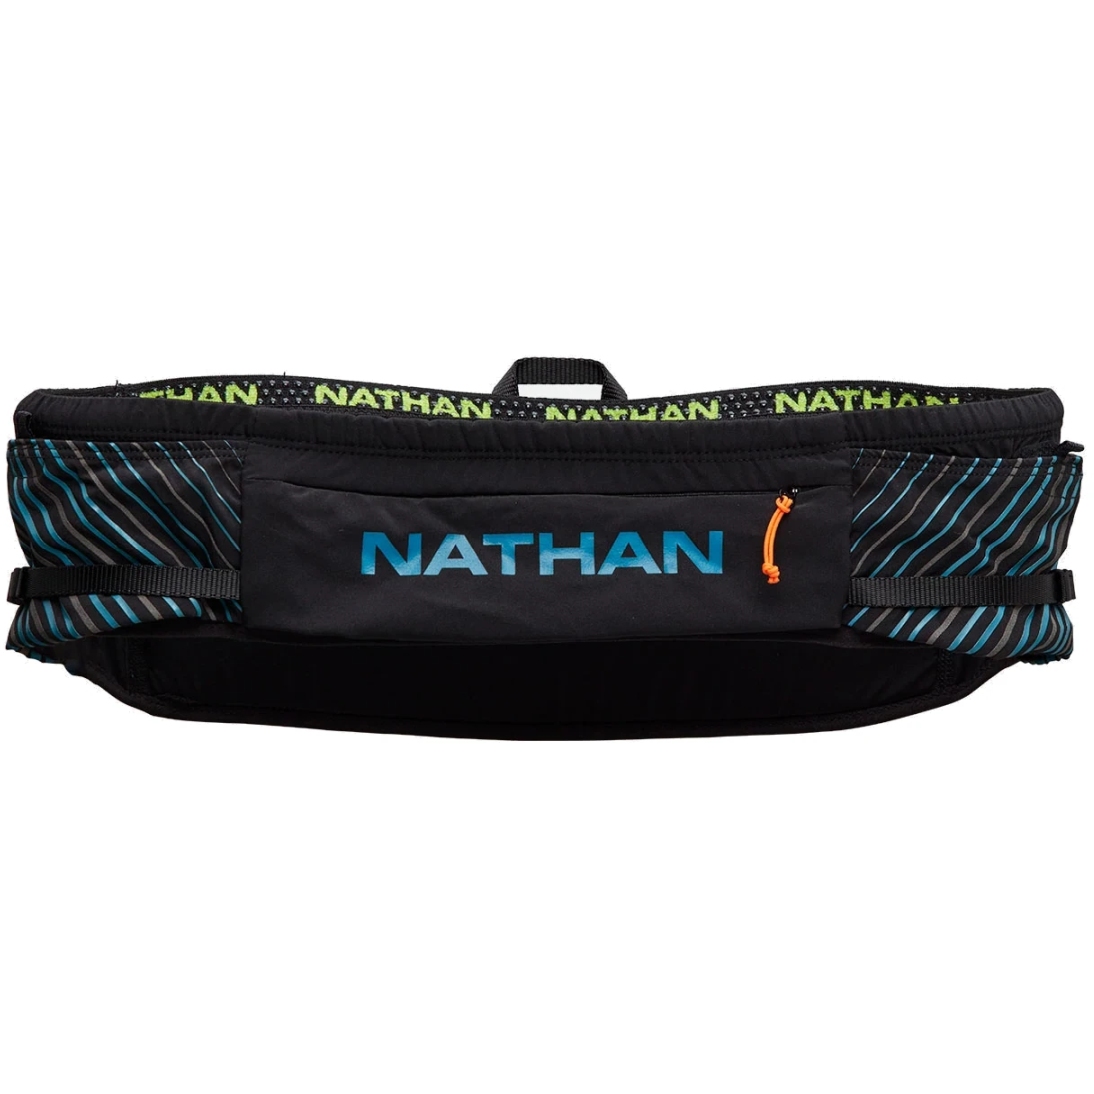 Produktbild von Nathan Sports Pinnacle Series Hüfttasche - black / blue me away